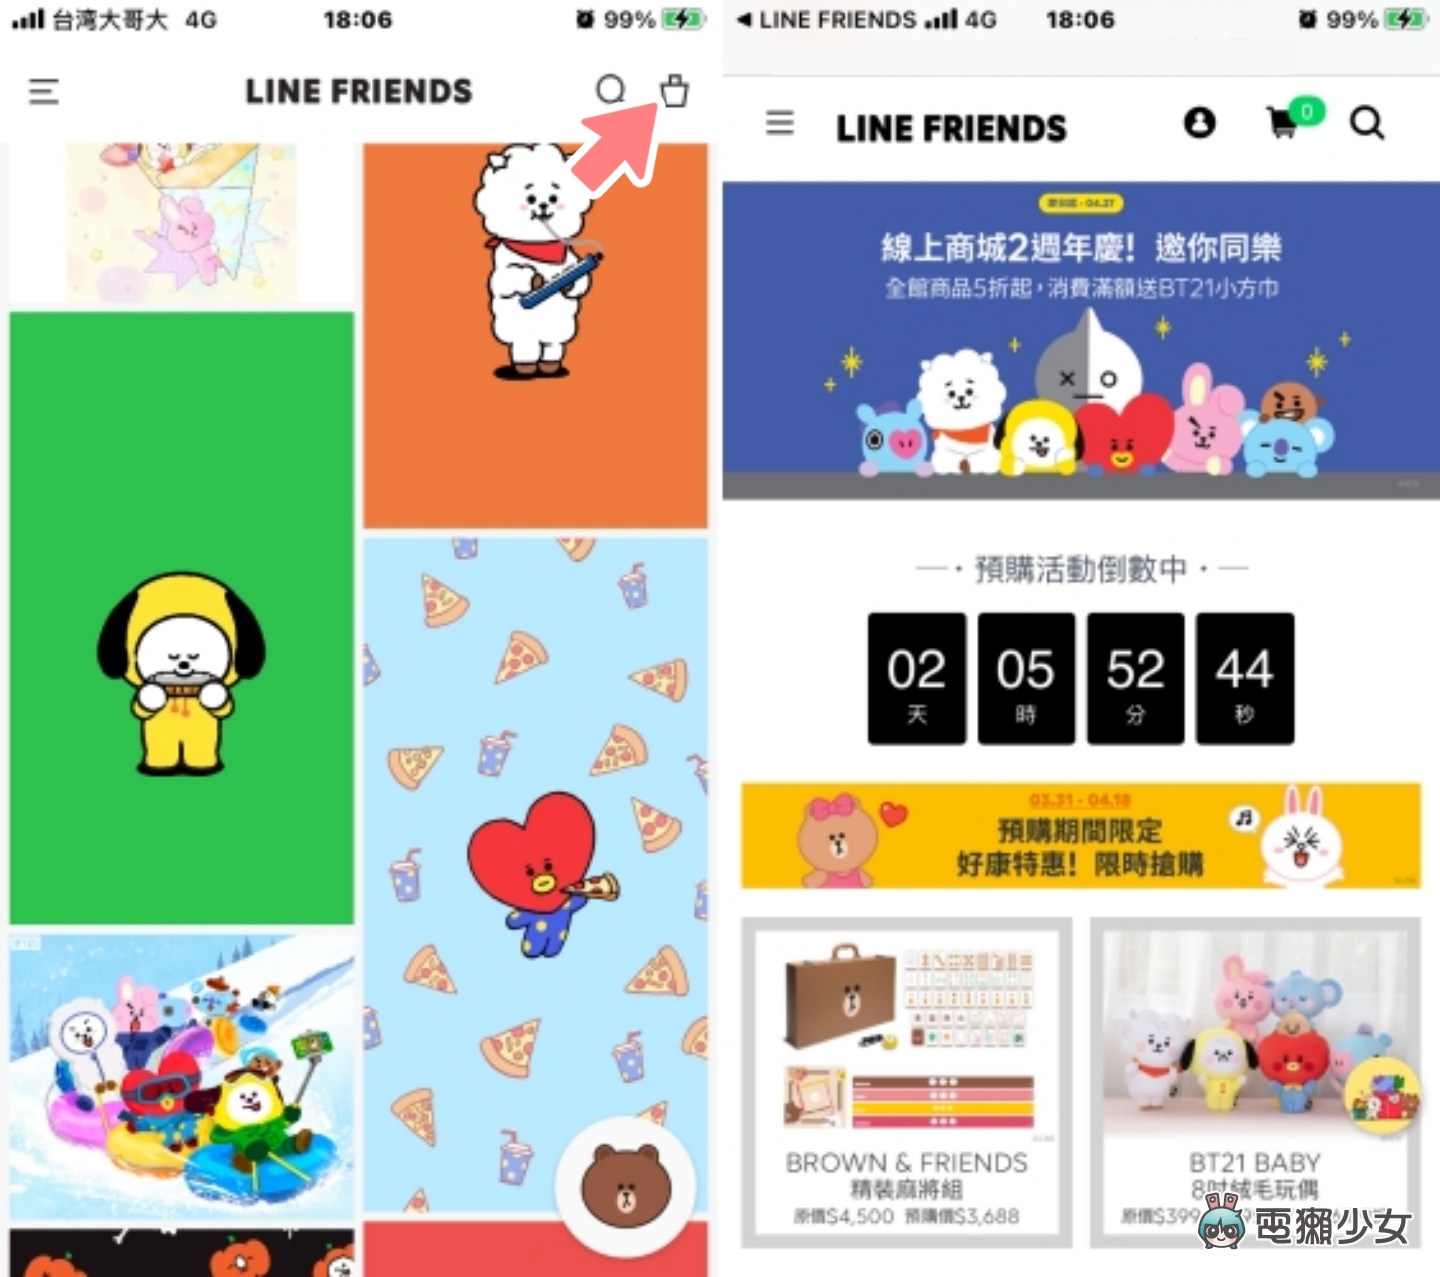 教你幫手機換上 LINE FRIENDS 桌布！多種角色的超萌插圖 通通可免費下載 iOS/Android